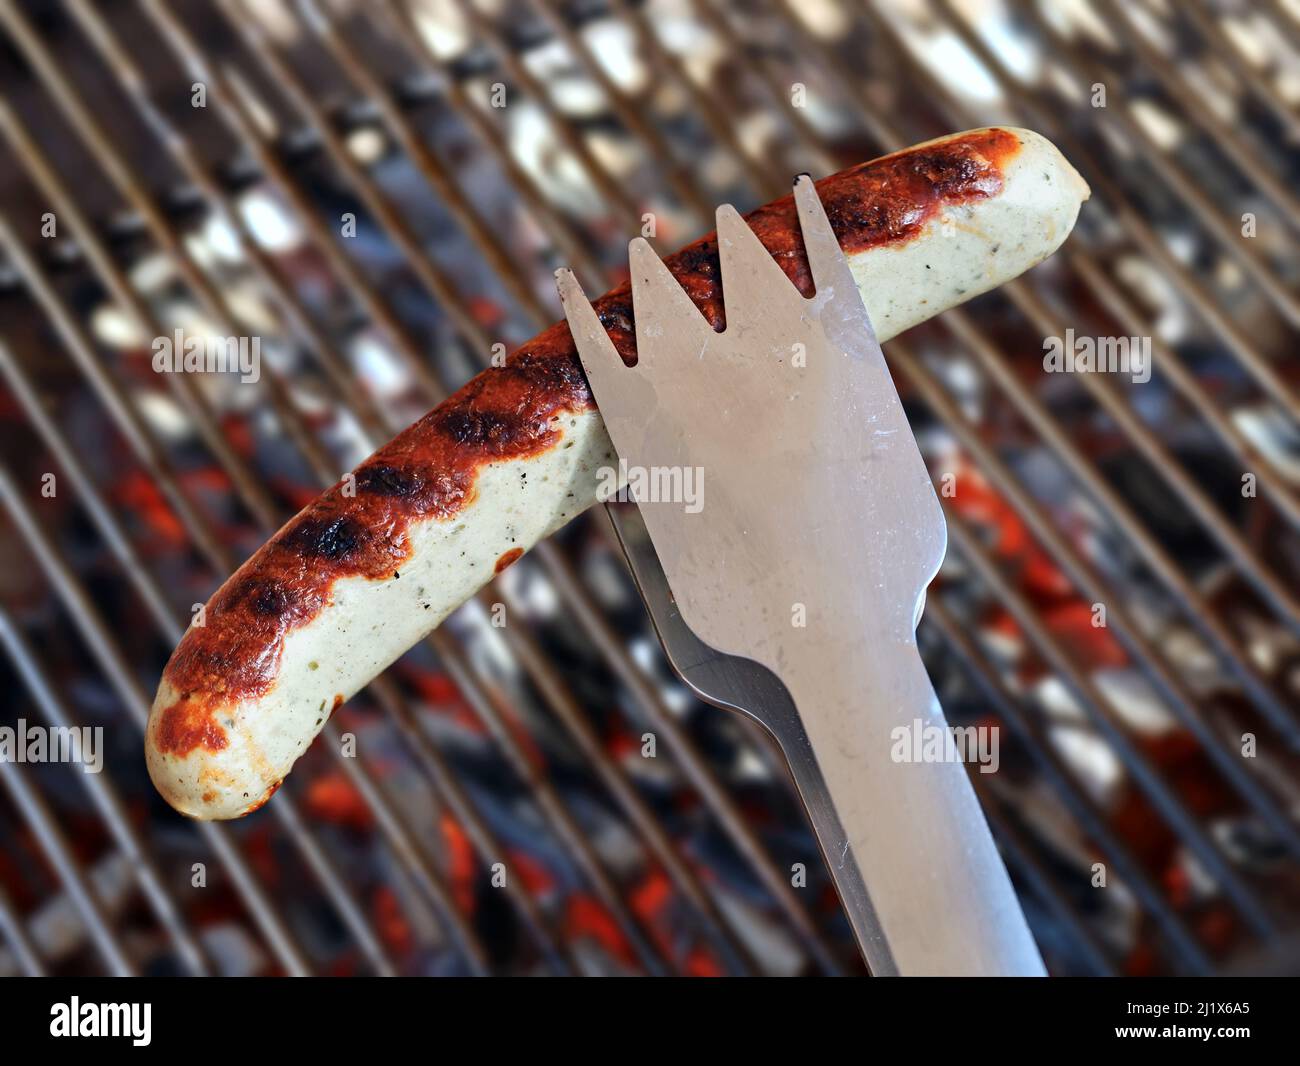 Tong en acier inoxydable avec Bratwurst, saucisse allemande sur le barbecue avec charbon de bois et grille sur le fond Banque D'Images